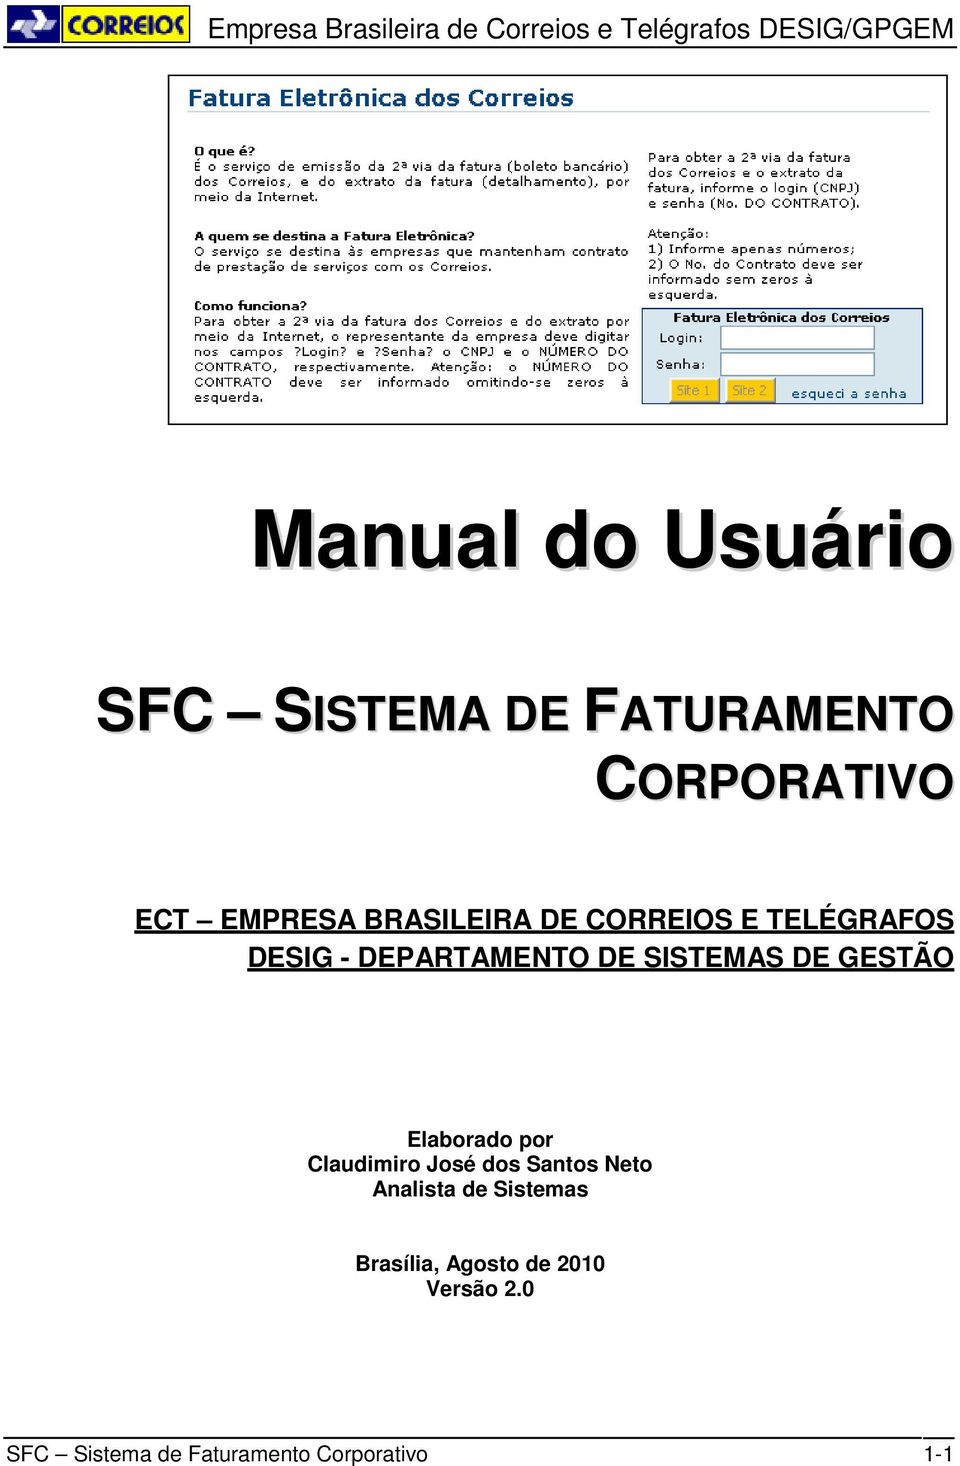 GESTÃO Elaborado por Claudimiro José dos Santos Neto Analista de Sistemas